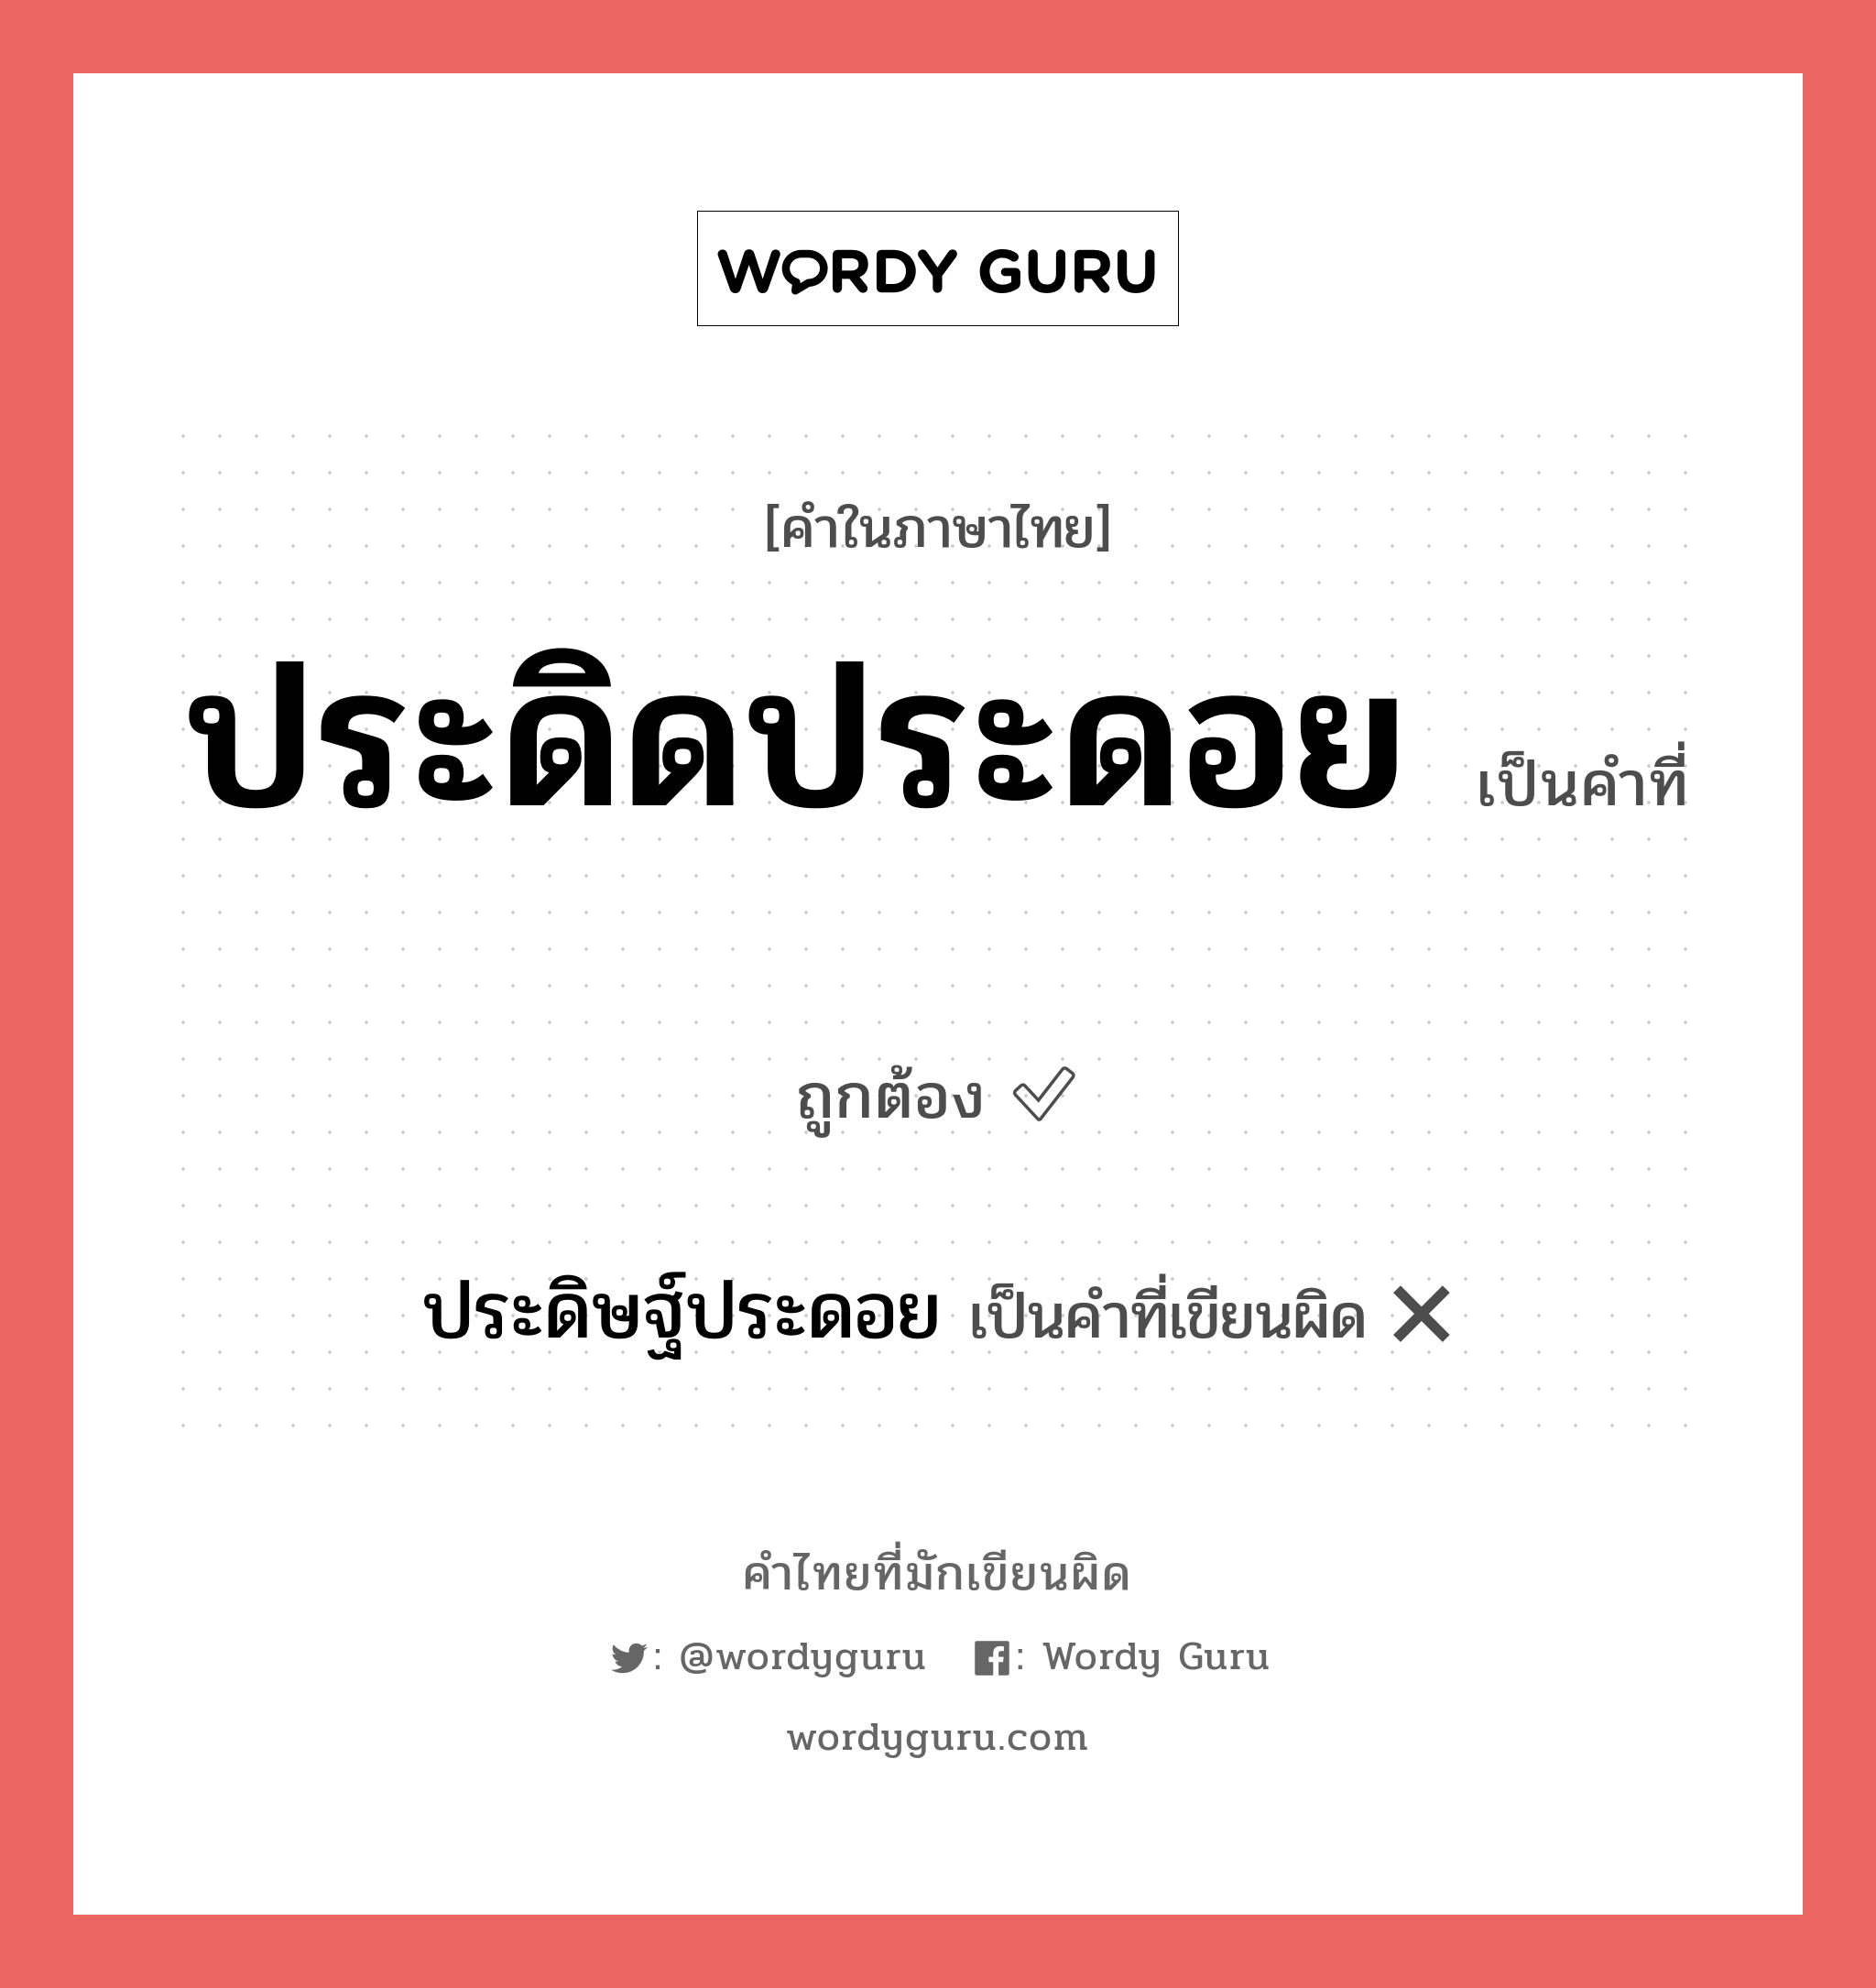 ประดิดประดอย หรือ ประดิษฐ์ประดอย คำไหนเขียนถูก?, คำในภาษาไทยที่มักเขียนผิด ประดิดประดอย คำที่ผิด ❌ ประดิษฐ์ประดอย